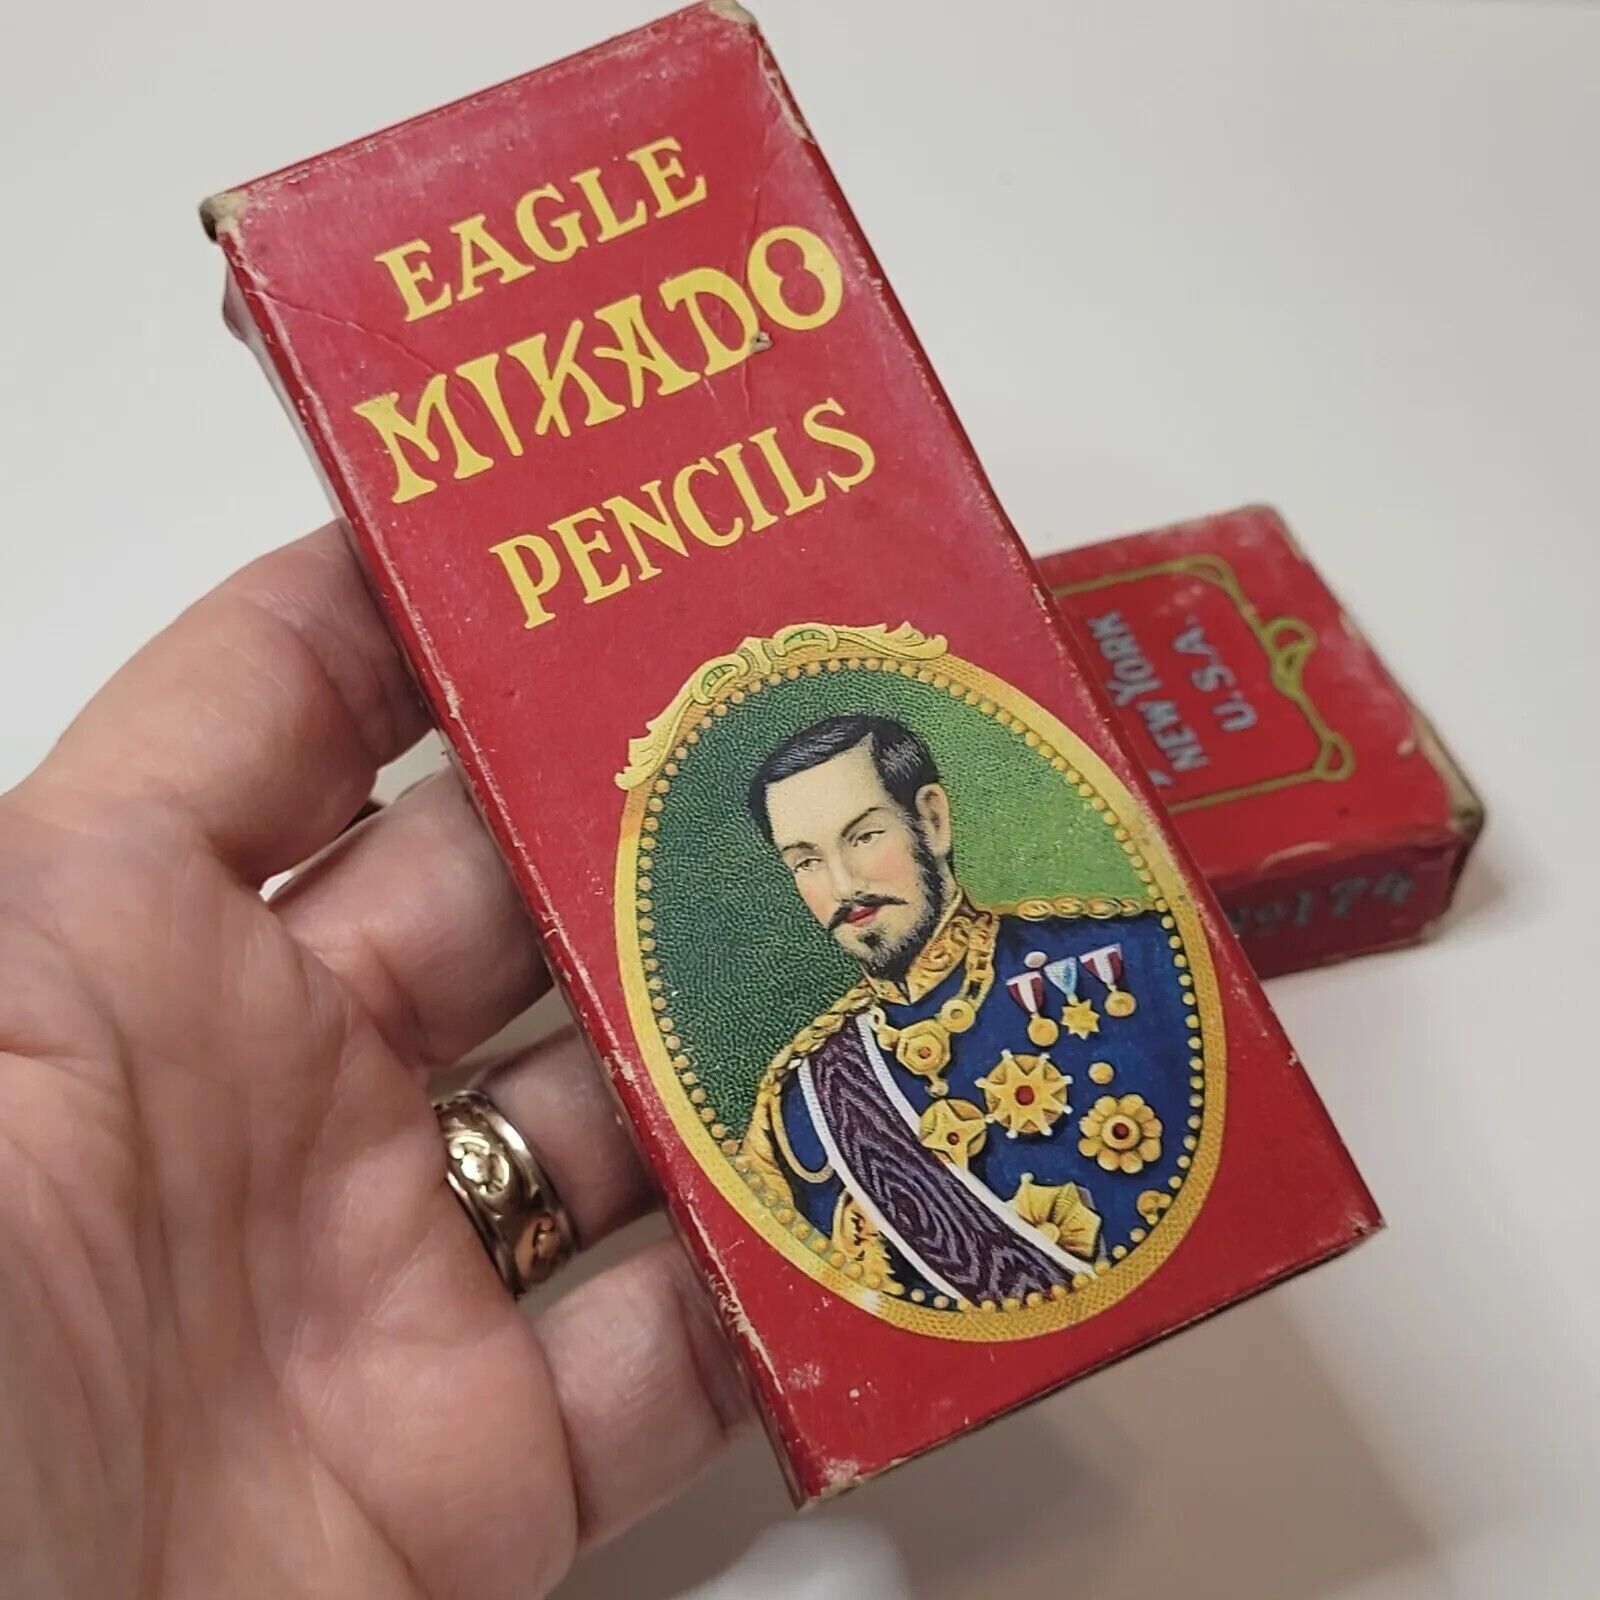 Vtg Eagle Mikado Red Pencil Box #174 Grade 2 Desk Accessory Ephemera BOX ONLY  